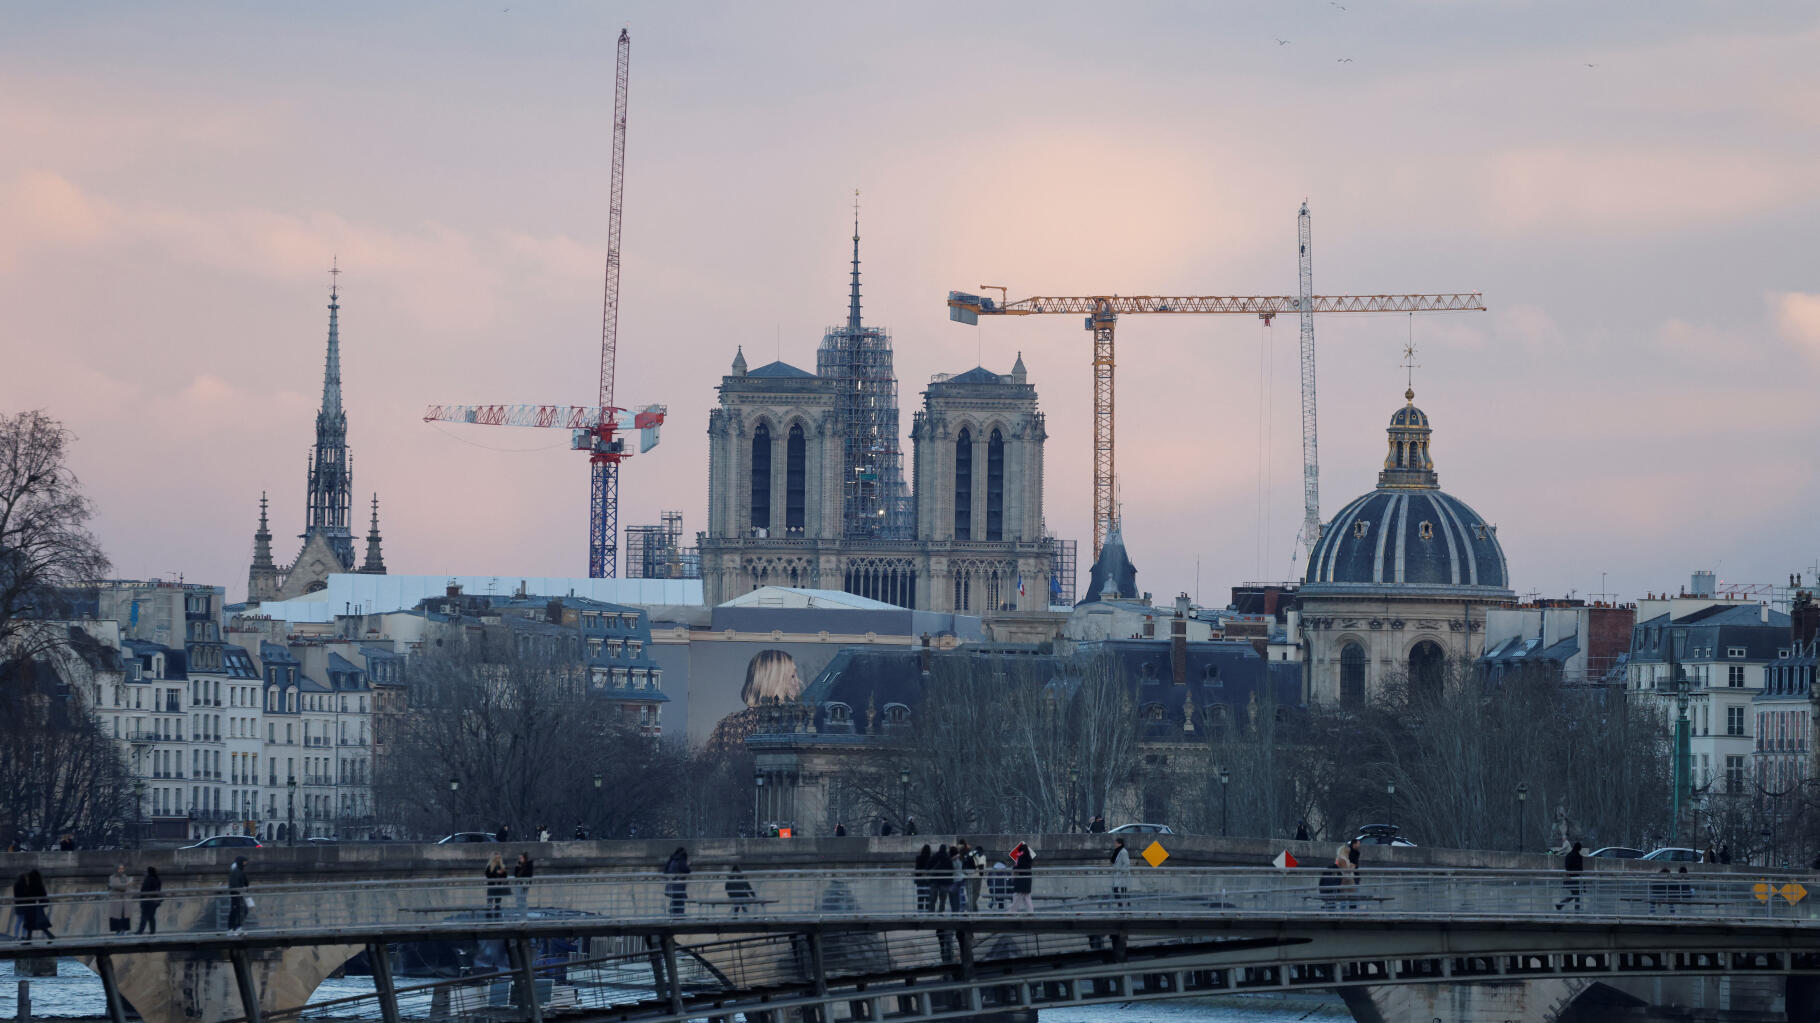   La flèche de Notre-Dame-de-Paris de nouveau visible, près de 5 ans après l’incendie  